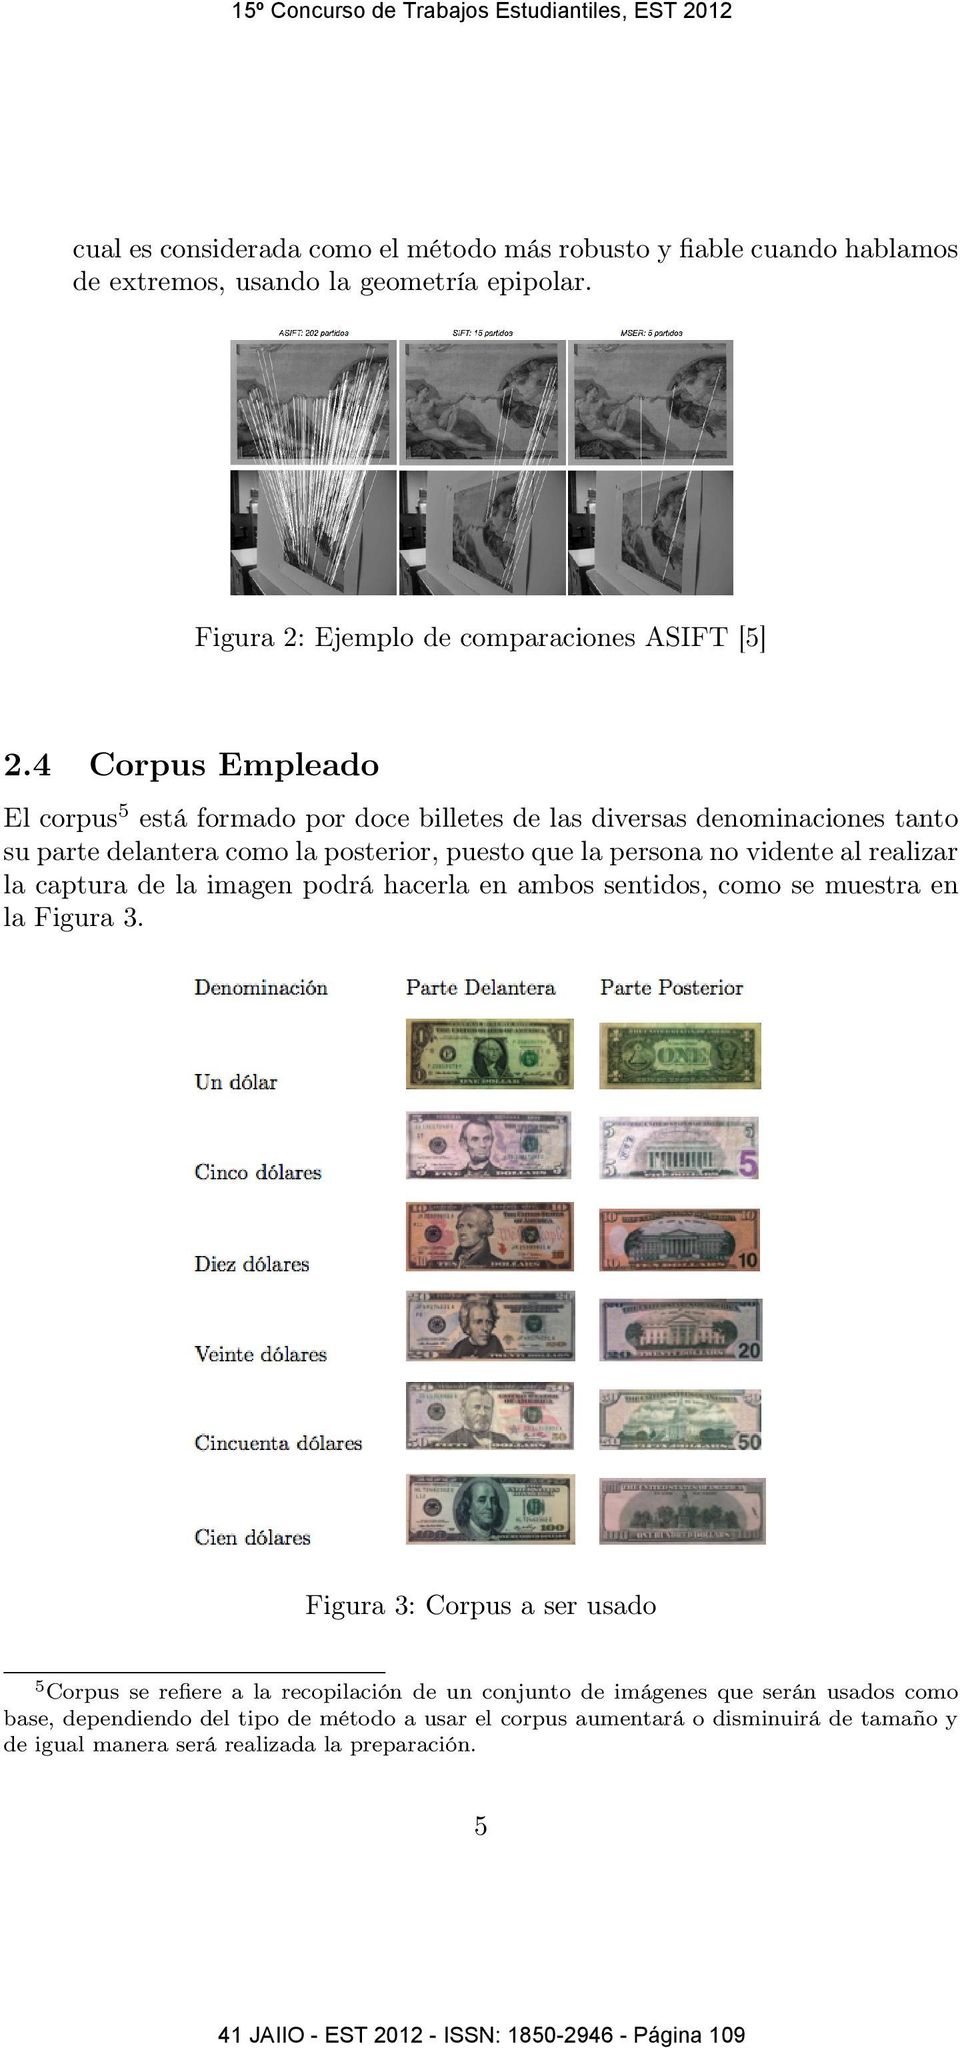 4 Corpus Empleado El corpus5 está formado por doce billetes de las diversas denominaciones tanto su parte delantera como la posterior, puesto que la persona no vidente al realizar la captura de